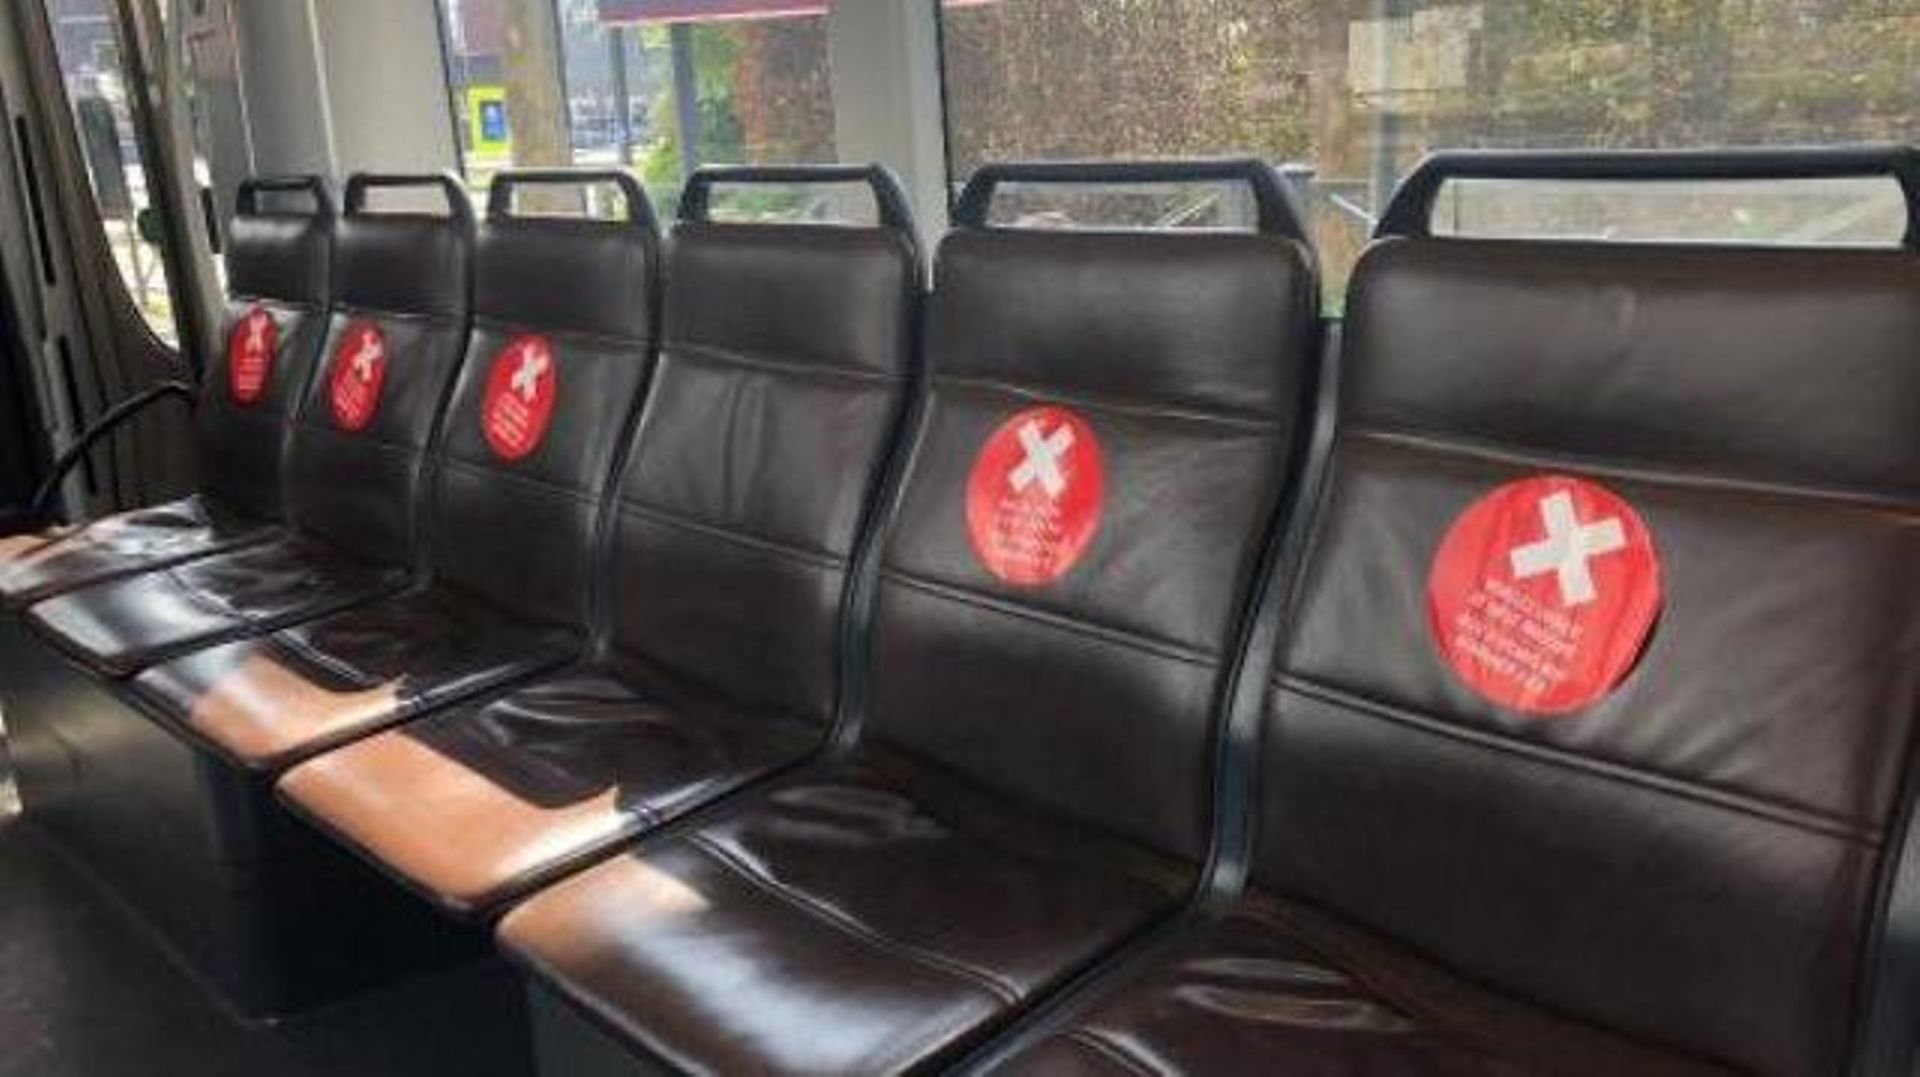 La Stib marque la distanciation sociale dans les transports publics avec des autocollants